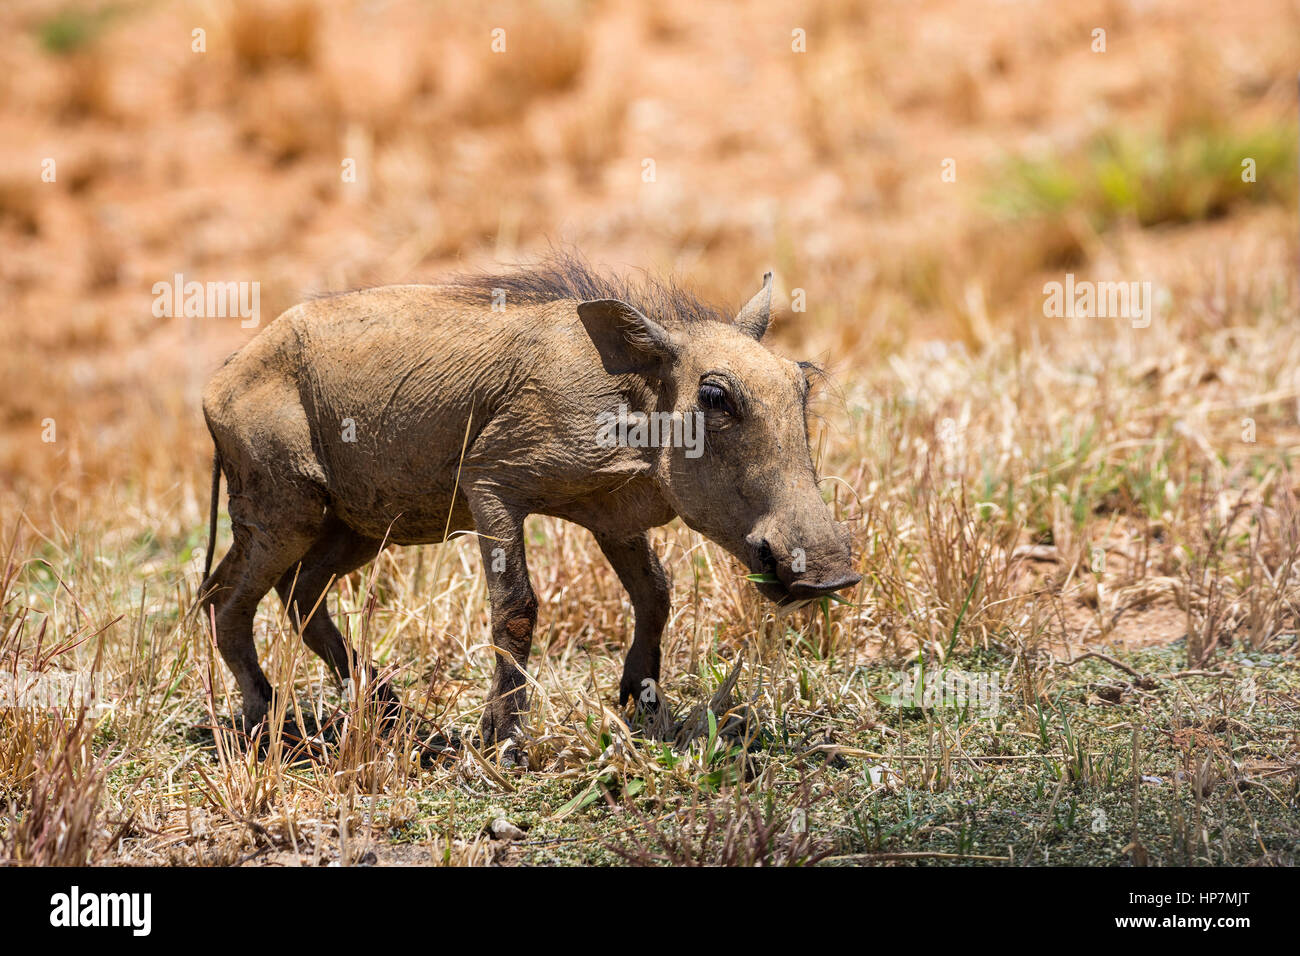 Junge gemeinsame Warzenschwein, Phacochoerus Africanus, Okonjima, Namibia, Afrika, von Monika Hrdinova/Dembinsky Foto Assoc Stockfoto